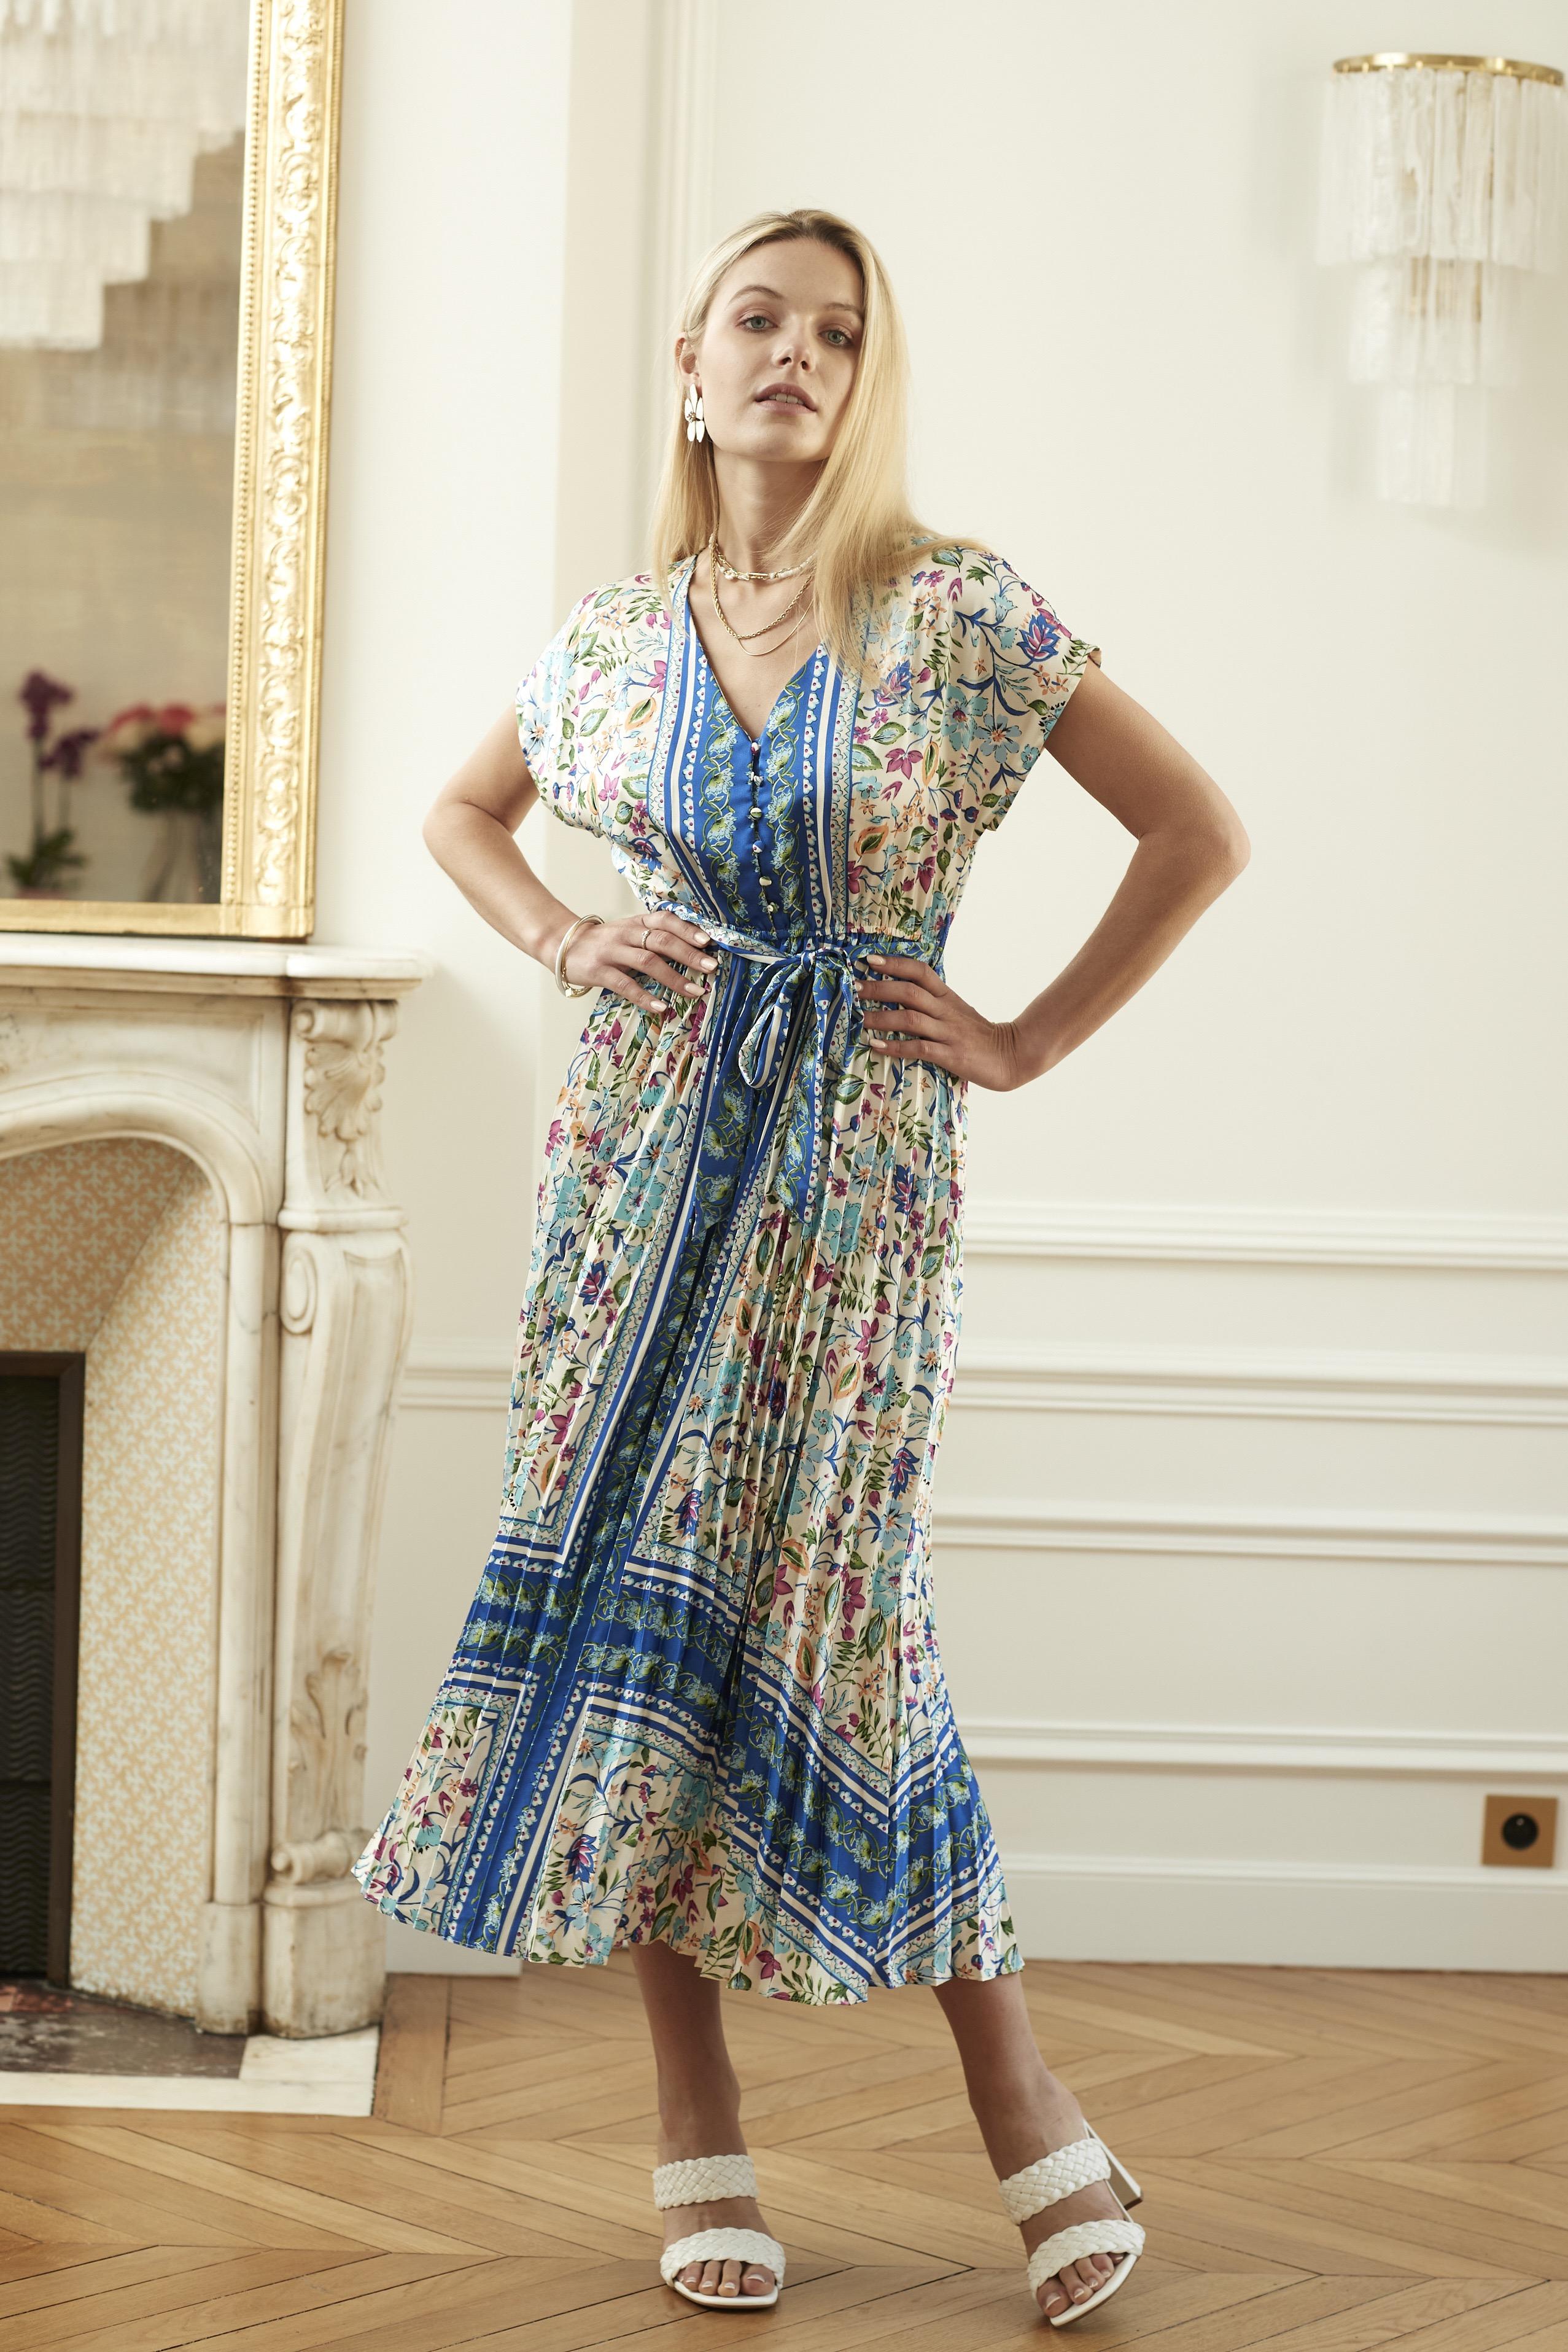 Robes longues Femme Bleu EXQUISS'S Paris RM200.RO #c Efashion Paris